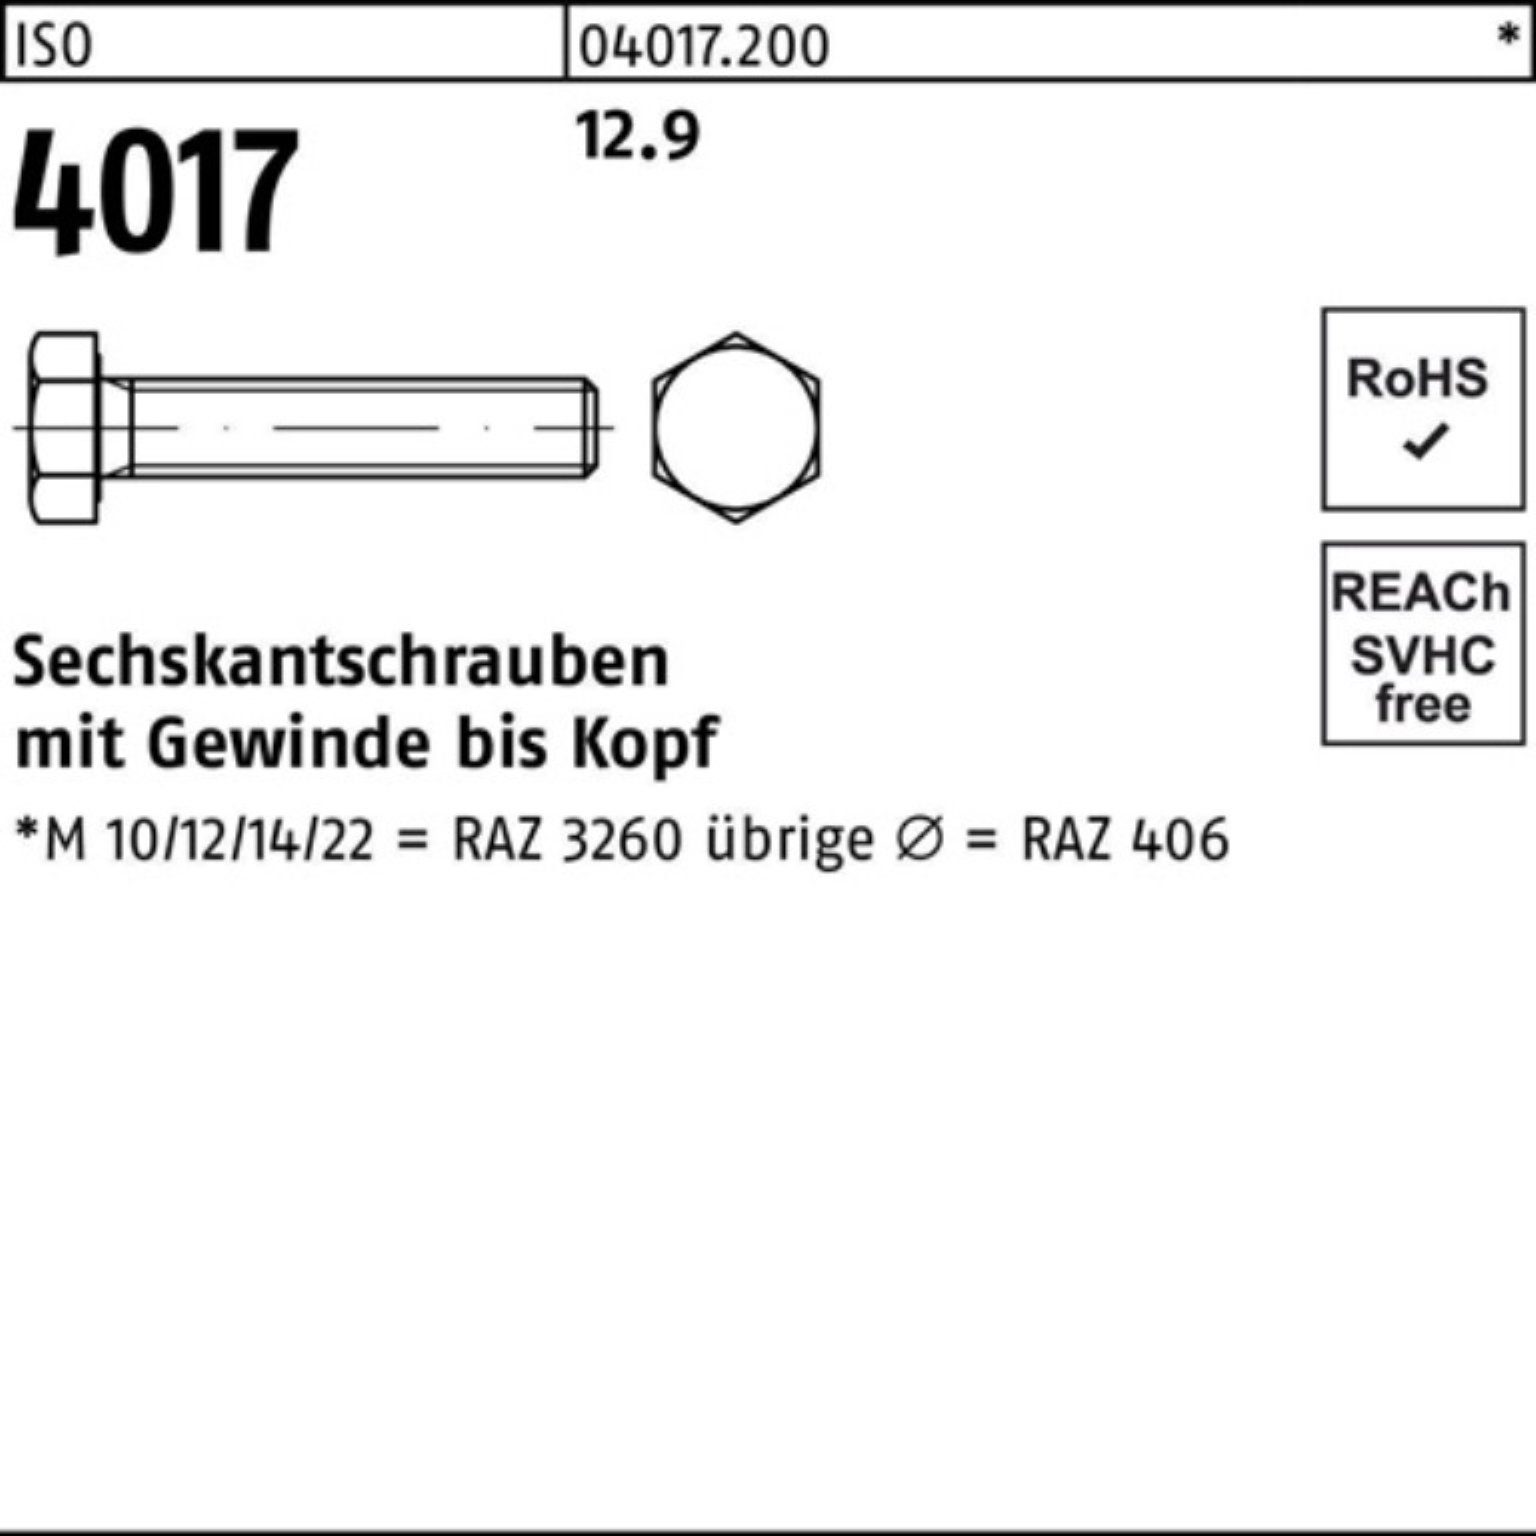 4017 ISO Sechskantschraube Sechskantschraube 12.9 100er VG Pack ISO 60 M24x 40 Bufab 25 Stück